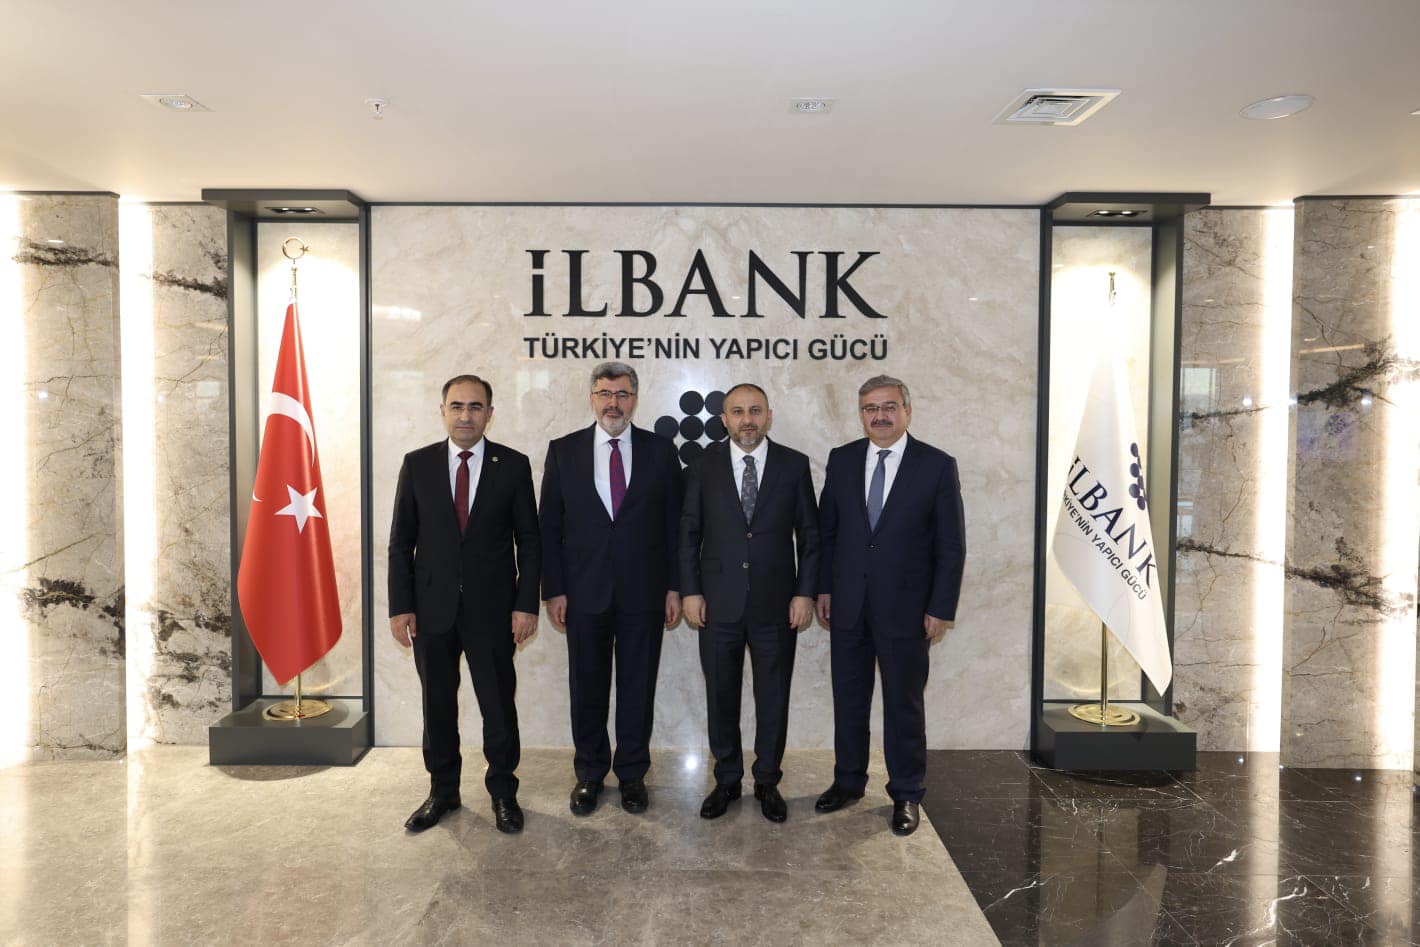 Ak Parti Milletvekili İbrahim Yurdunuseven, İller Bankası Genel Müdürü Recep Türk'ü Ziyaret Etti